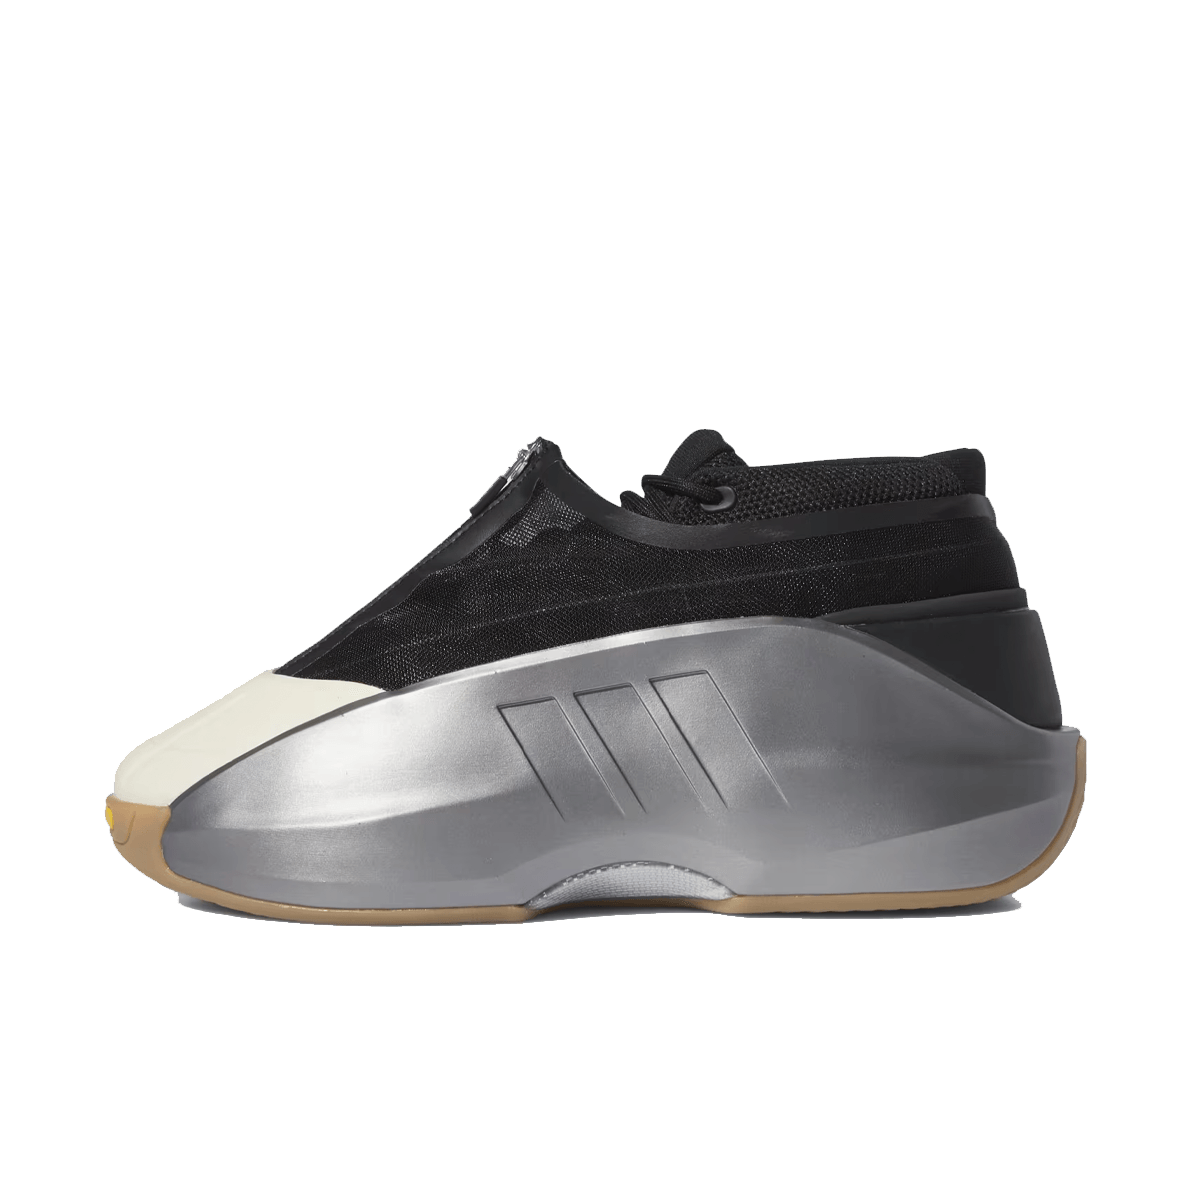 adidas Crazy IIInfinity 'Silver Metallic' IE7687